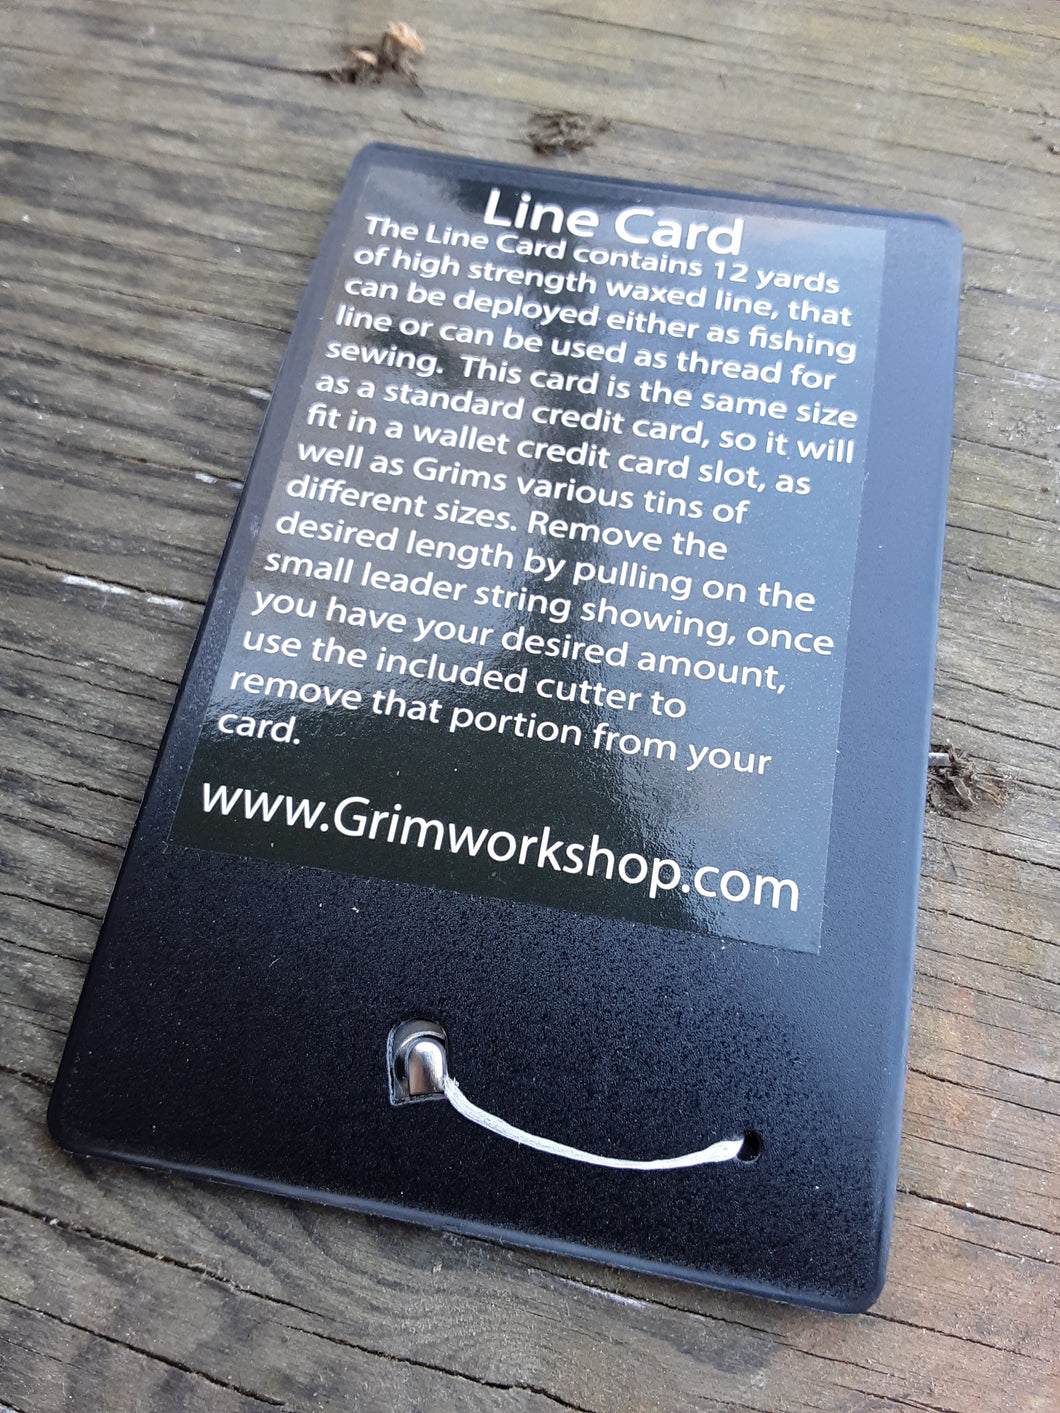 Line card Grimworkshop